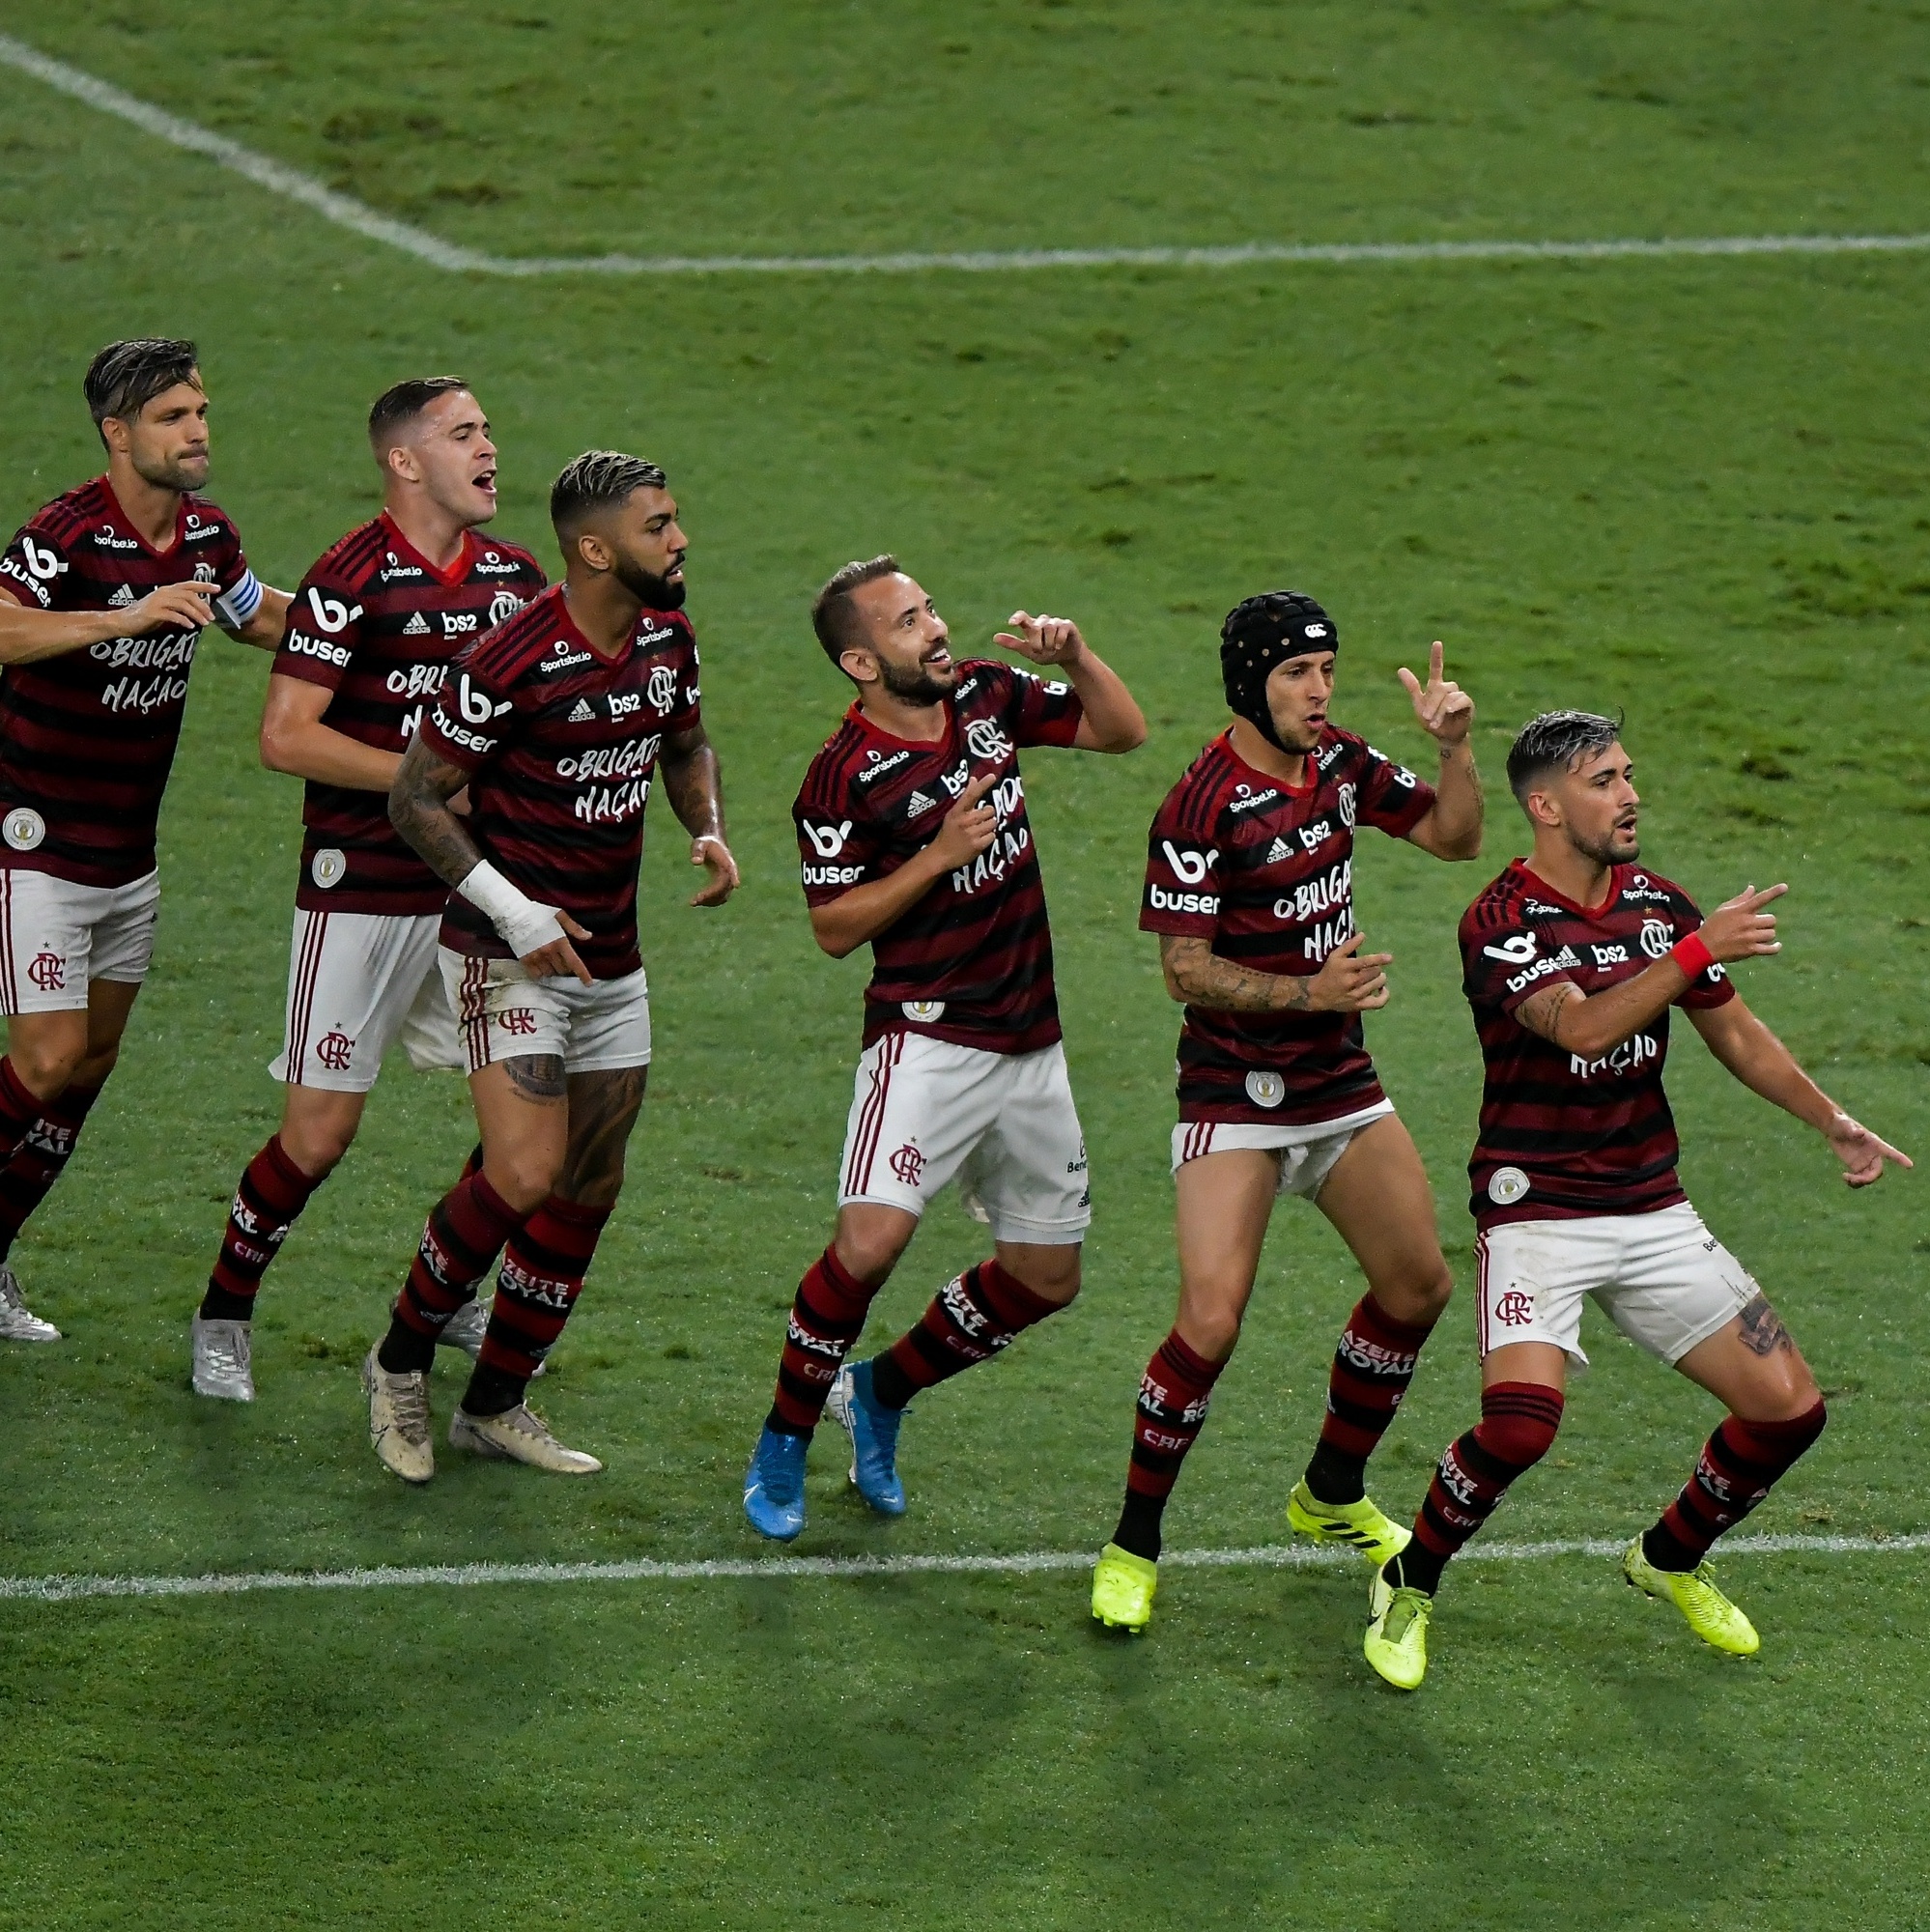 Brasileirão Série A: Quais times nunca caíram e histórico do rebaixamento